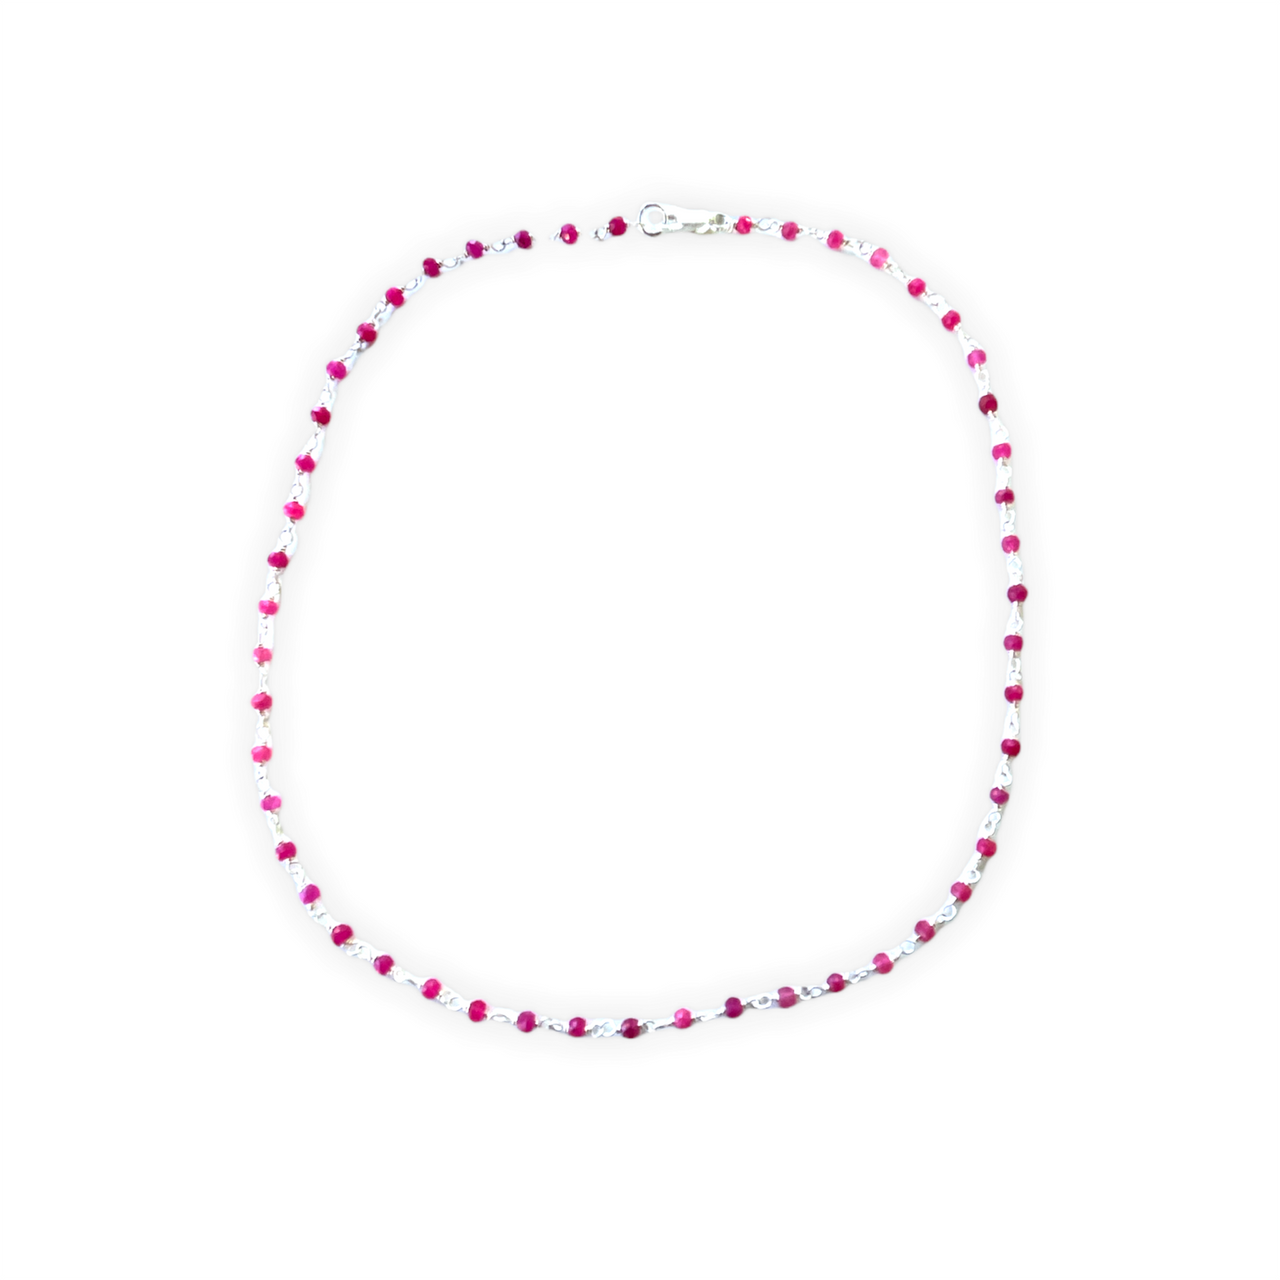 Espectacular collar corto de plata de ley y piedras naturales rosas. Este collar es una pieza ideal y llena de energía para que la combines con tu look preferido.